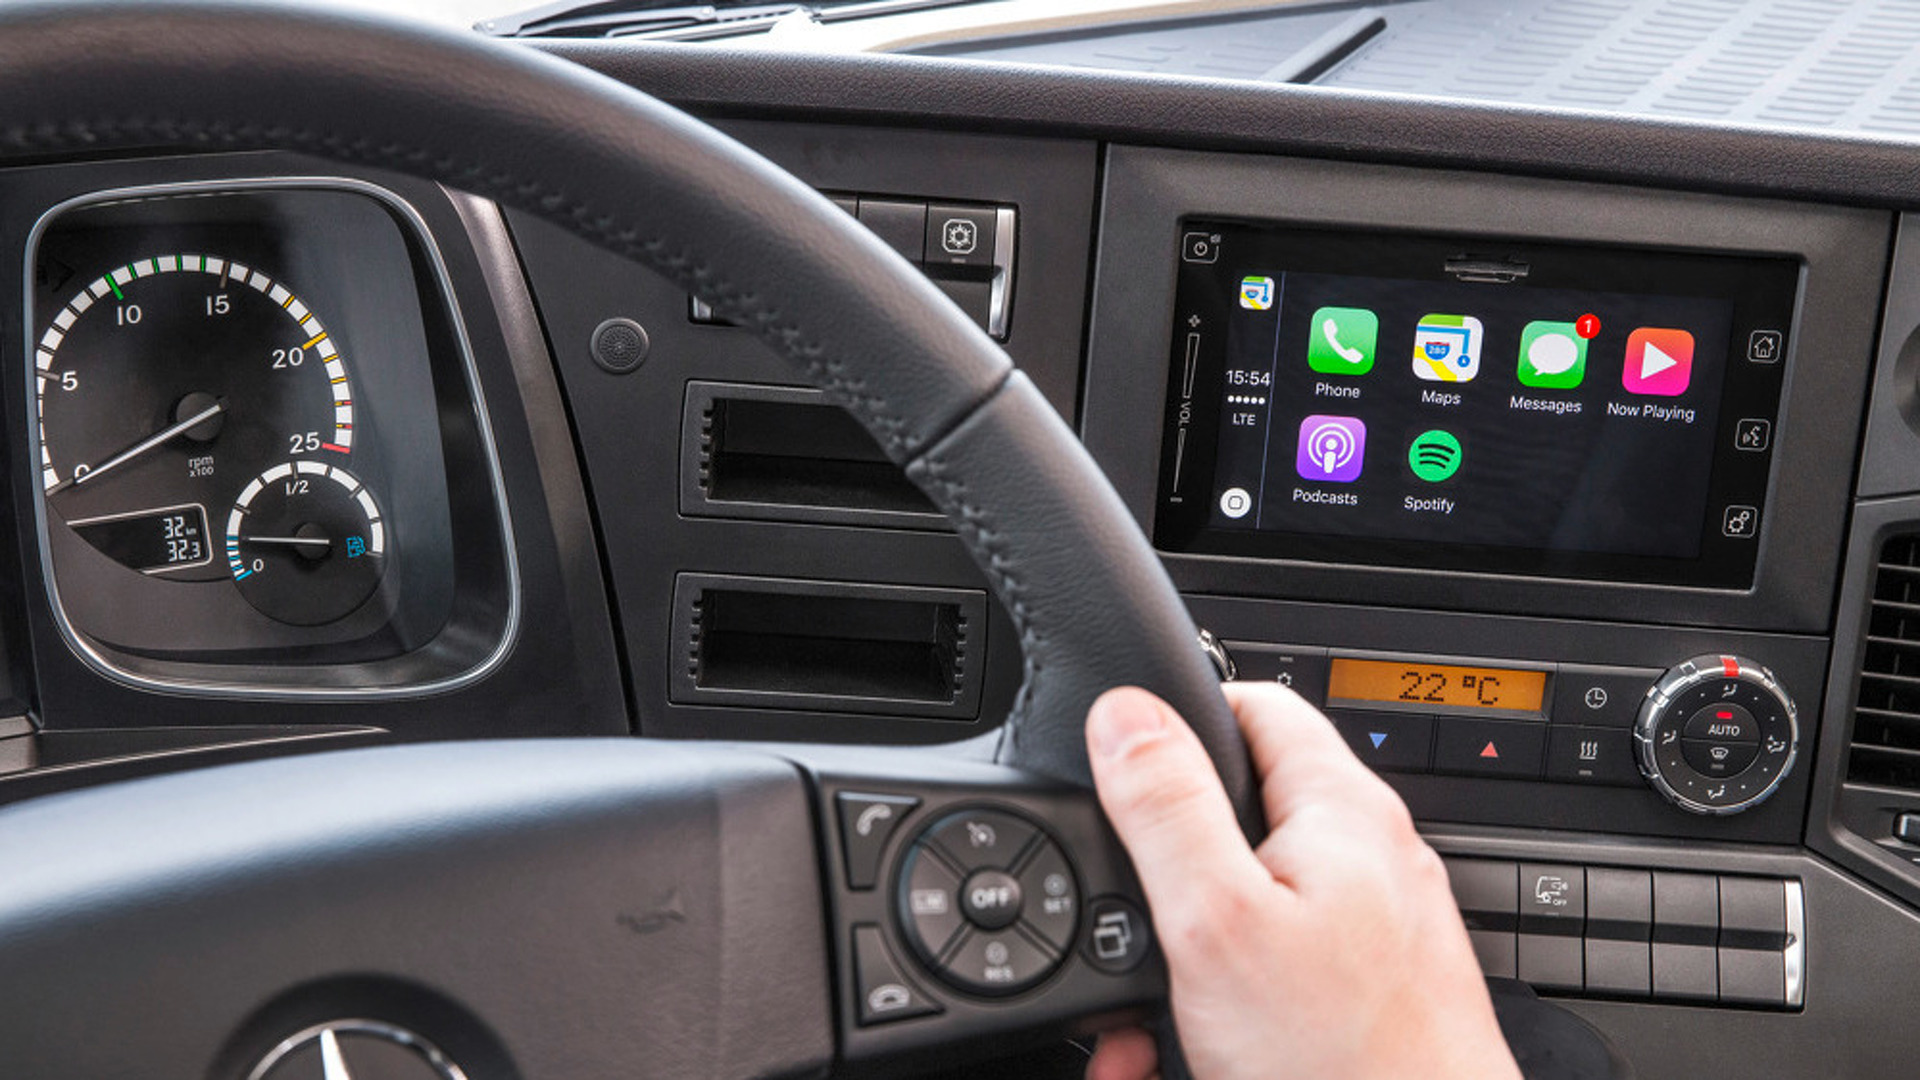 Власти могут получать доступ к данным на смартфоне через автомобиль